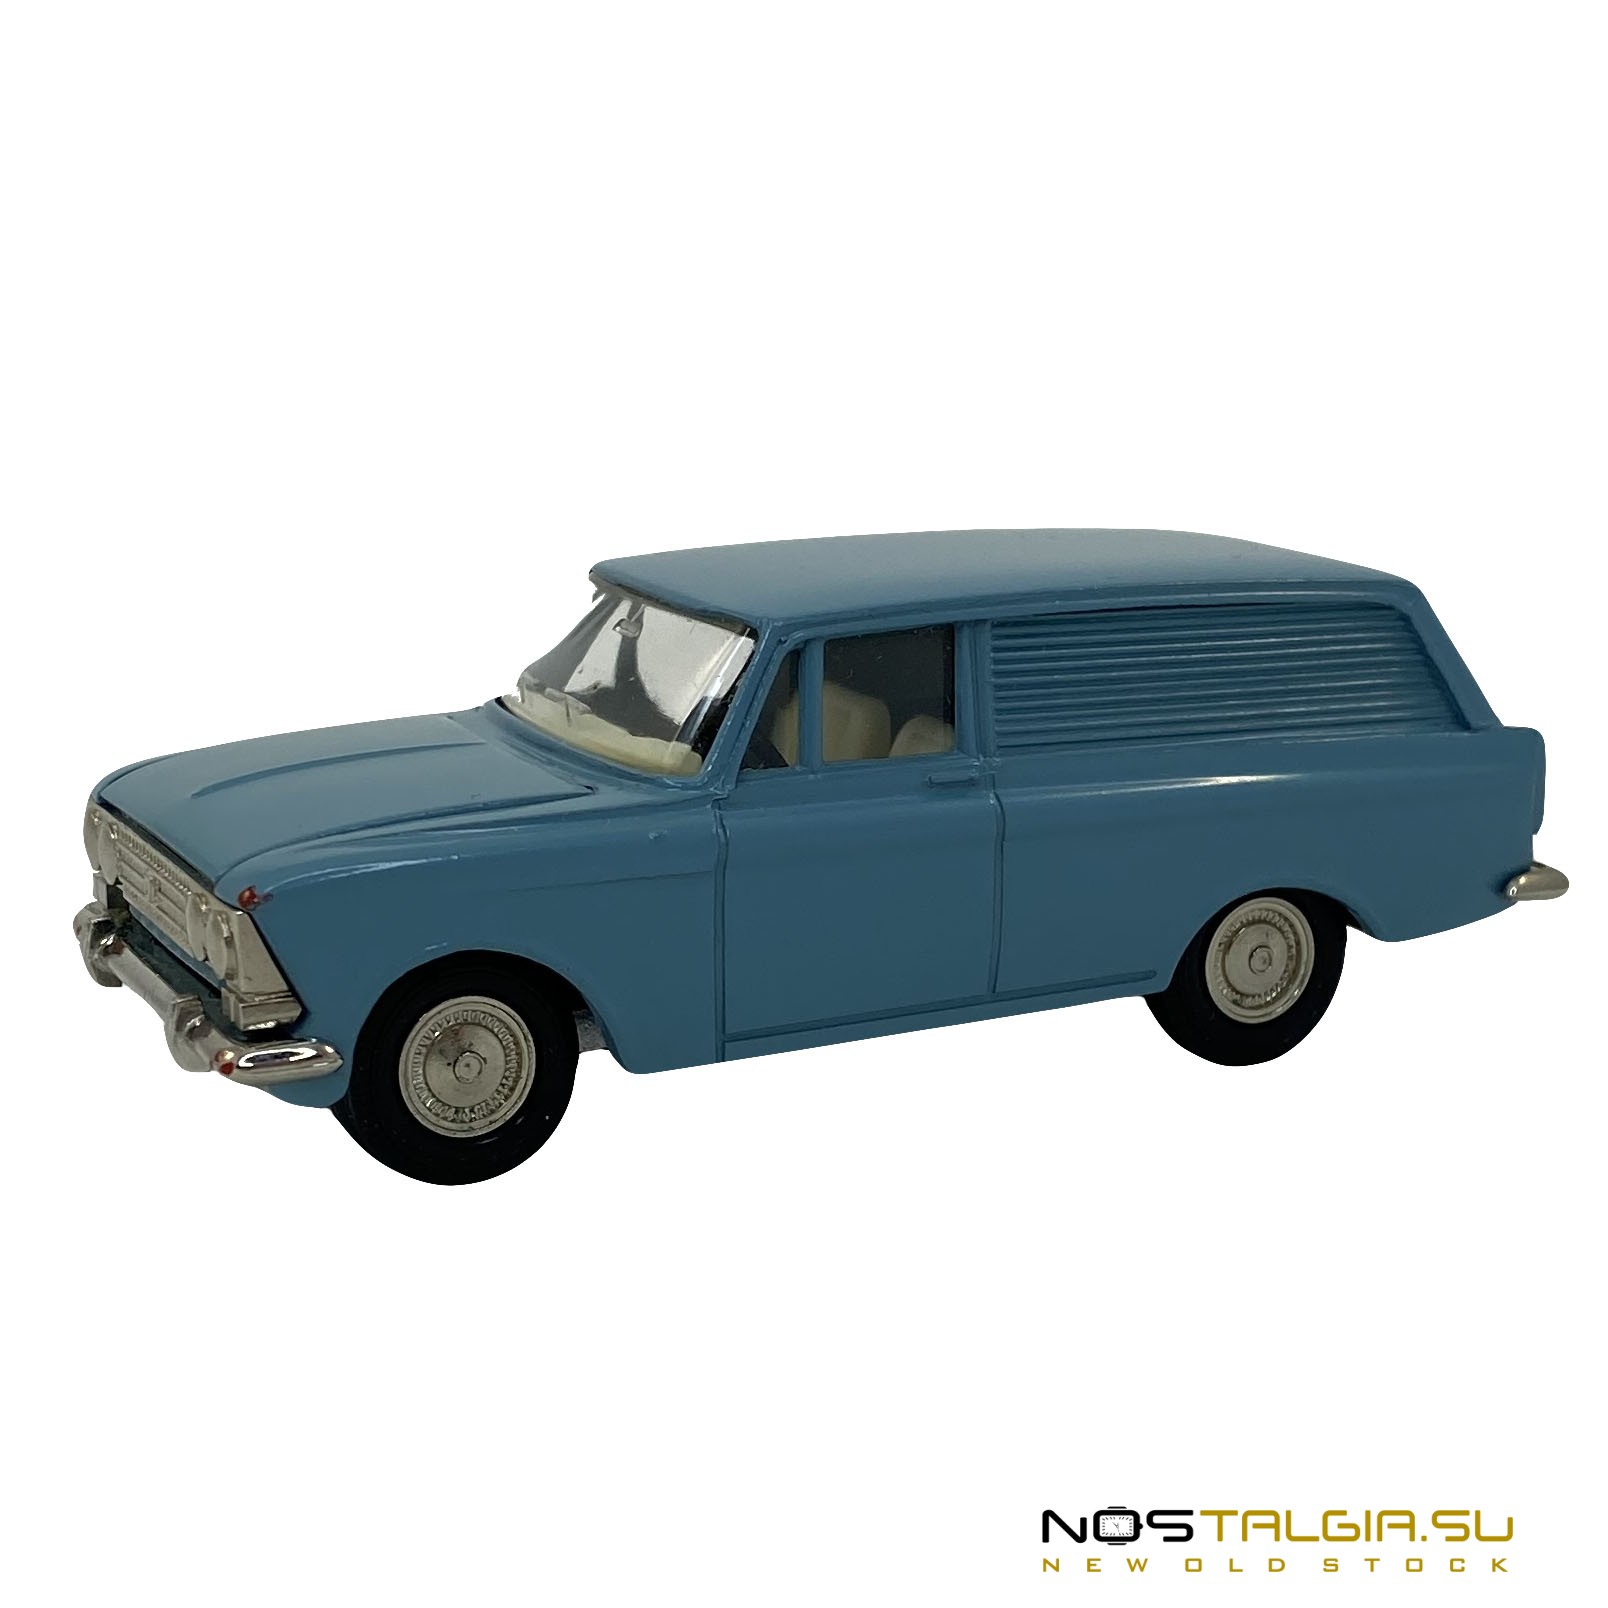 Модель автомобиля Москвич 433, производство СССР, масштаб 1:43, есть родная коробка, отличный внешний вид